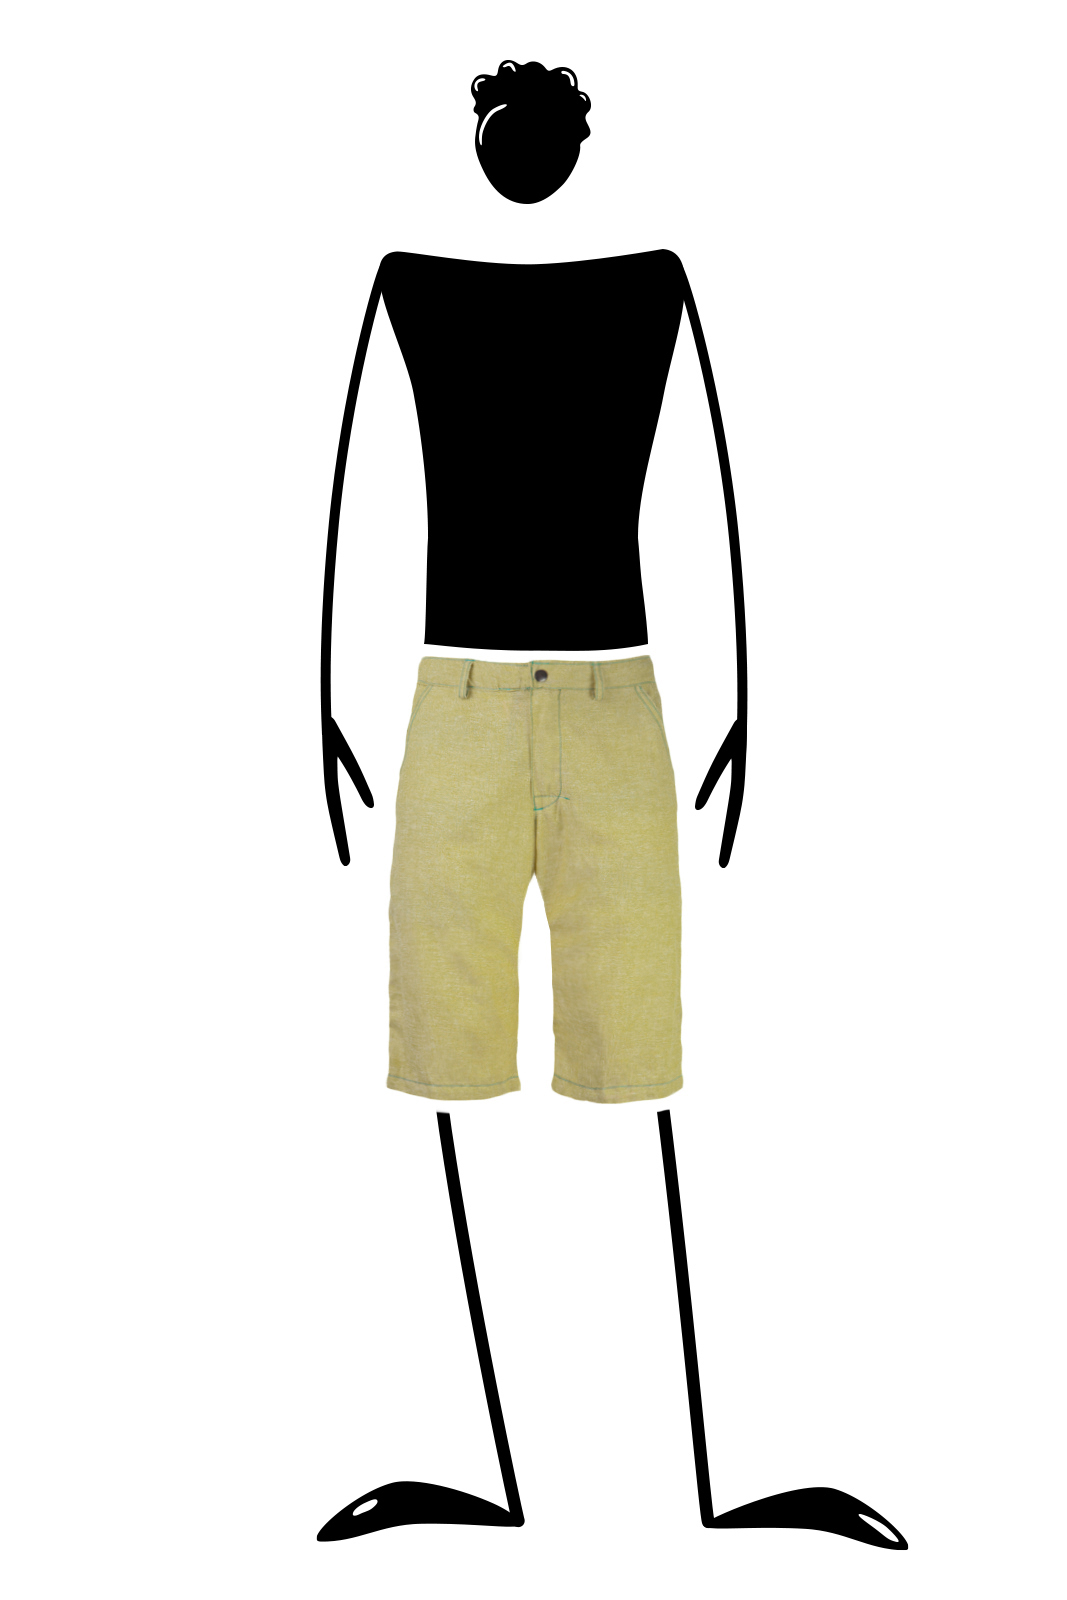 pantalone corto uomo arrampicata in lino lime giallo ALO Monvic